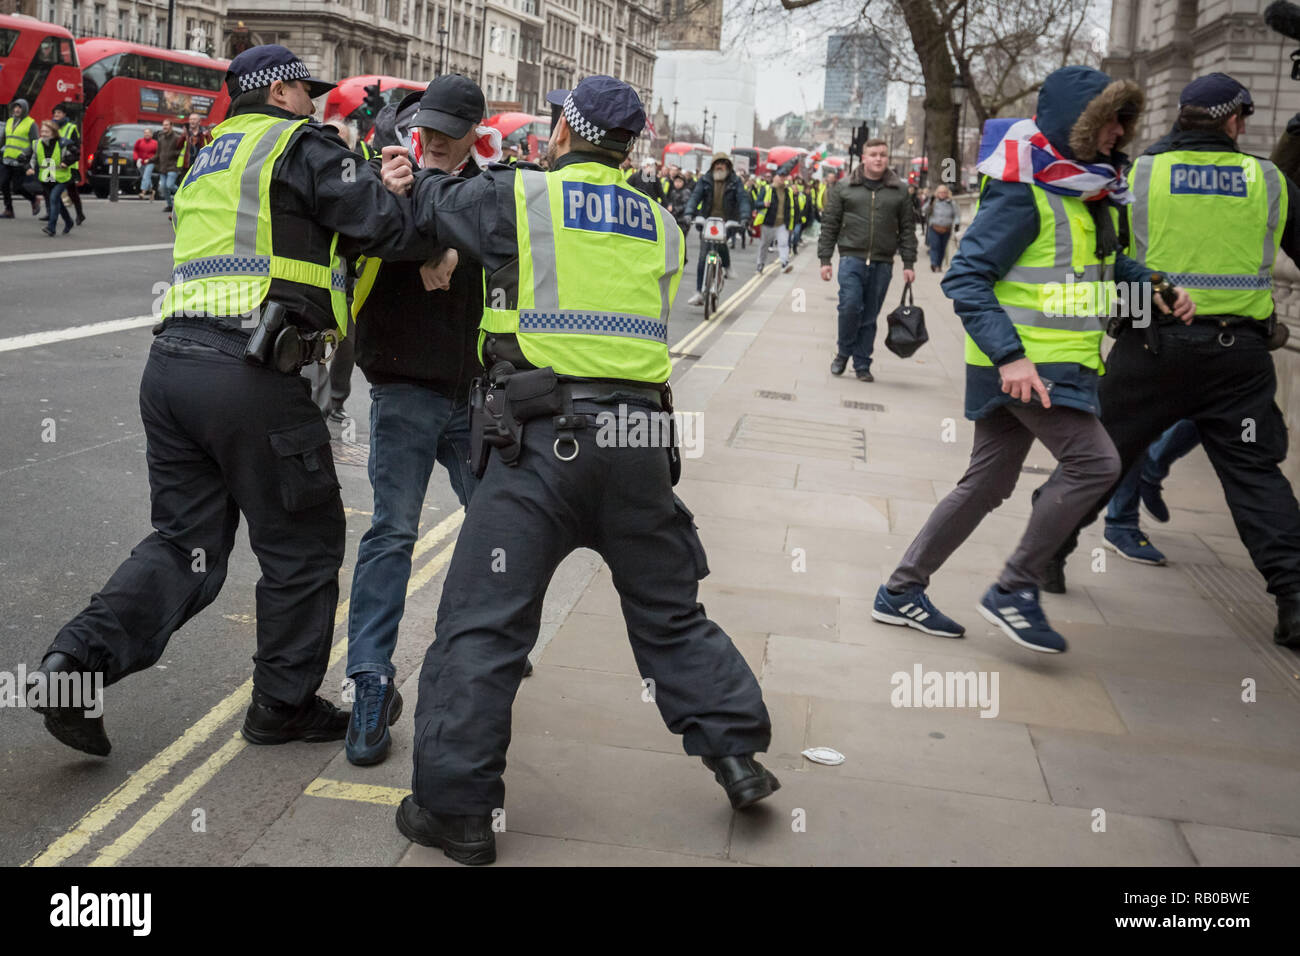 Londres, Royaume-Uni. 5 janvier 2019. Pro-Brexit se fait appeler les manifestants jaune 'UK' circulation bloquer les routes et de la circulation, à Westminster. Crédit : Guy Josse/Alamy Live News Banque D'Images